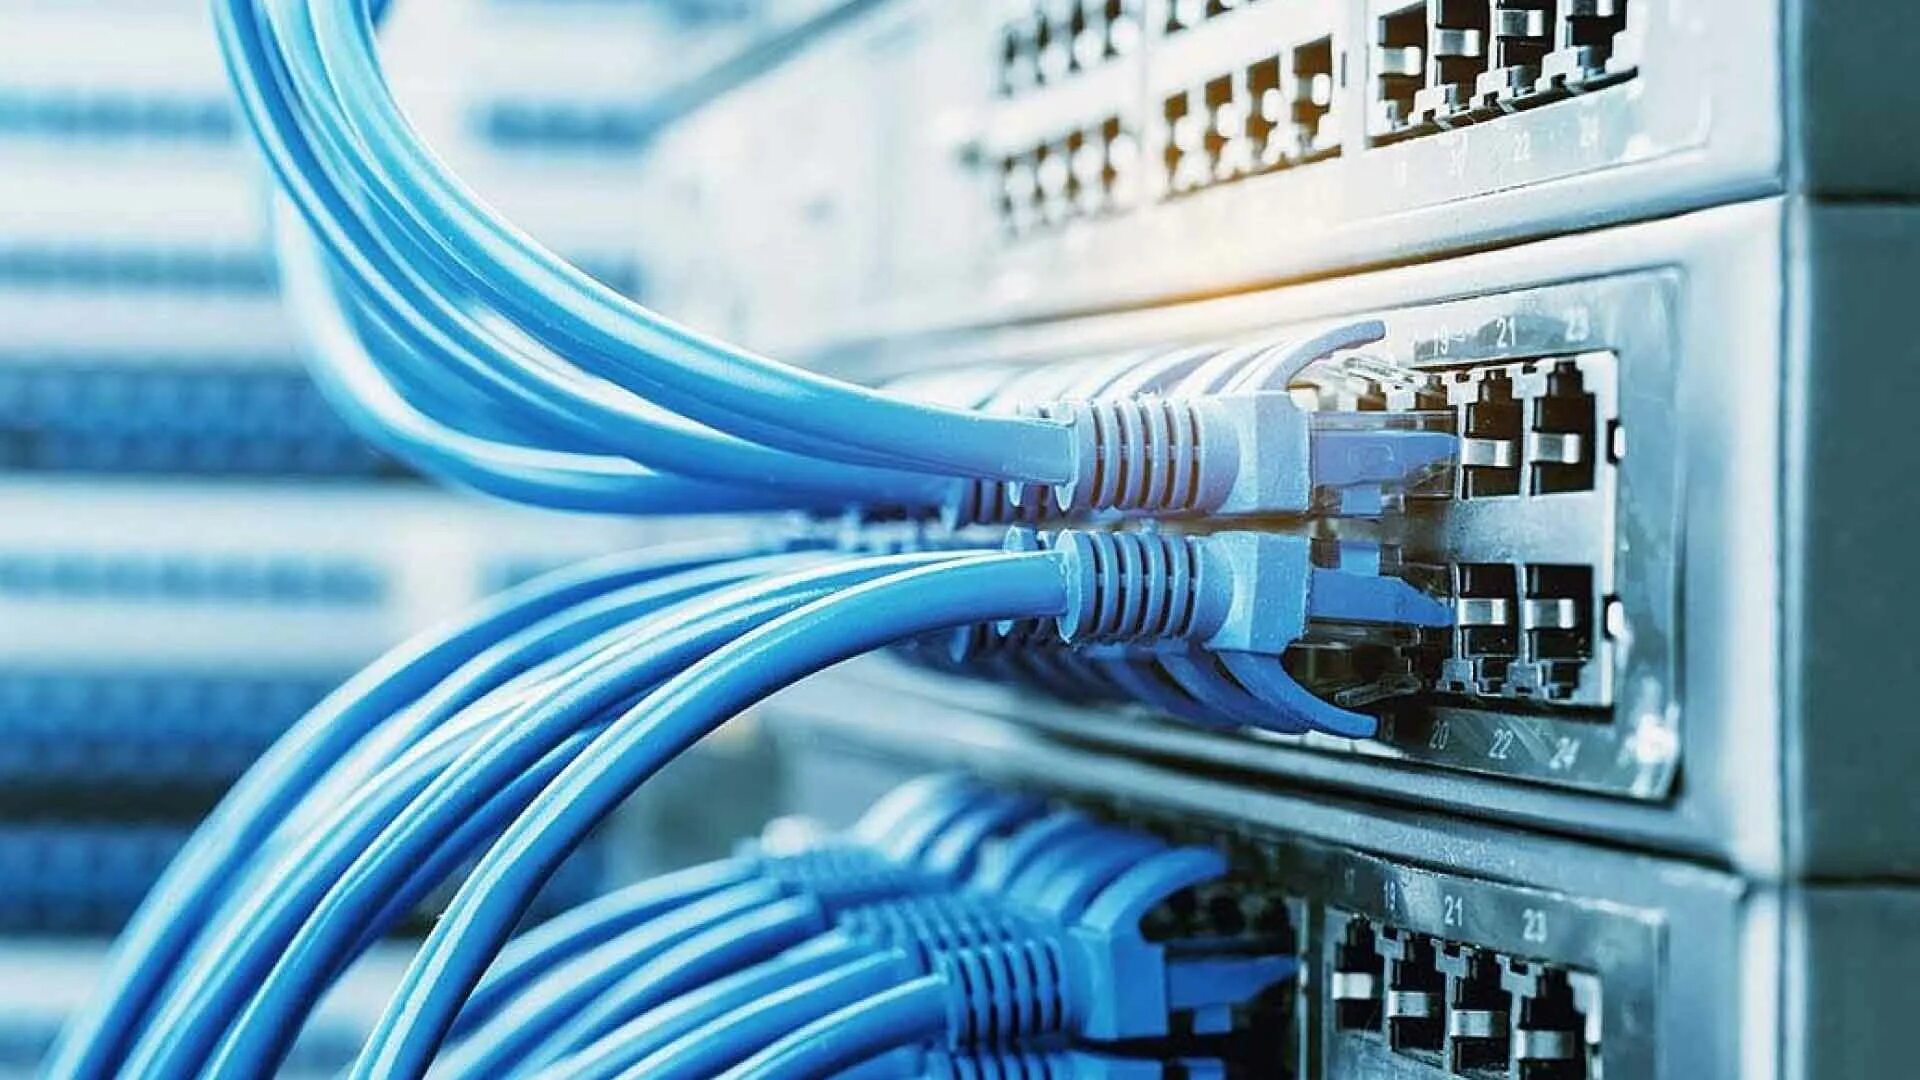 Network security professionals. СКС Структурированная кабельная система. ВОЛС ЛВС СКС. Телекоммуникационная инфраструктура. Локальная сеть.